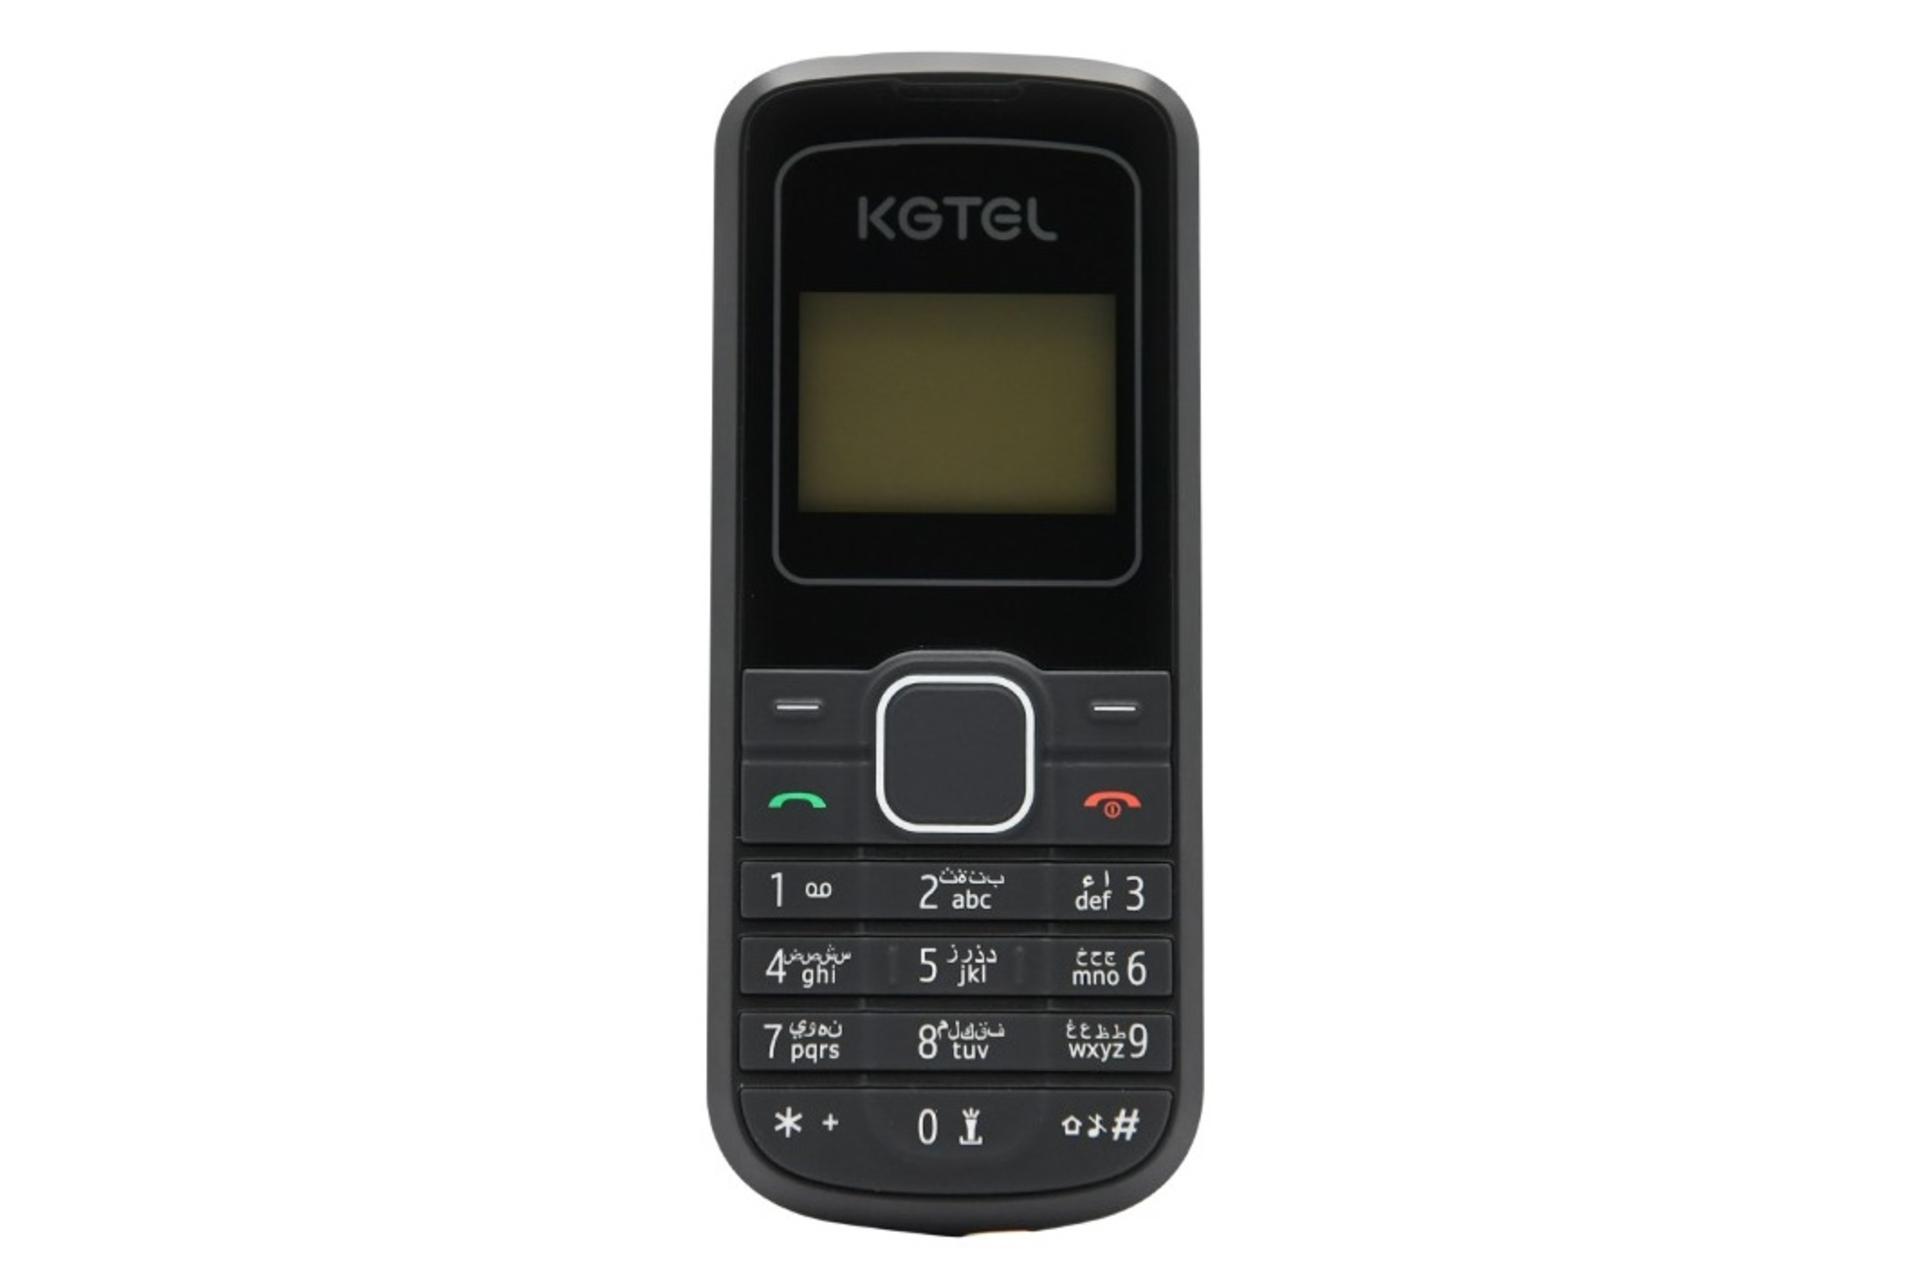 پنل جلو گوشی موبایل کاجیتل KGTEL KG1202